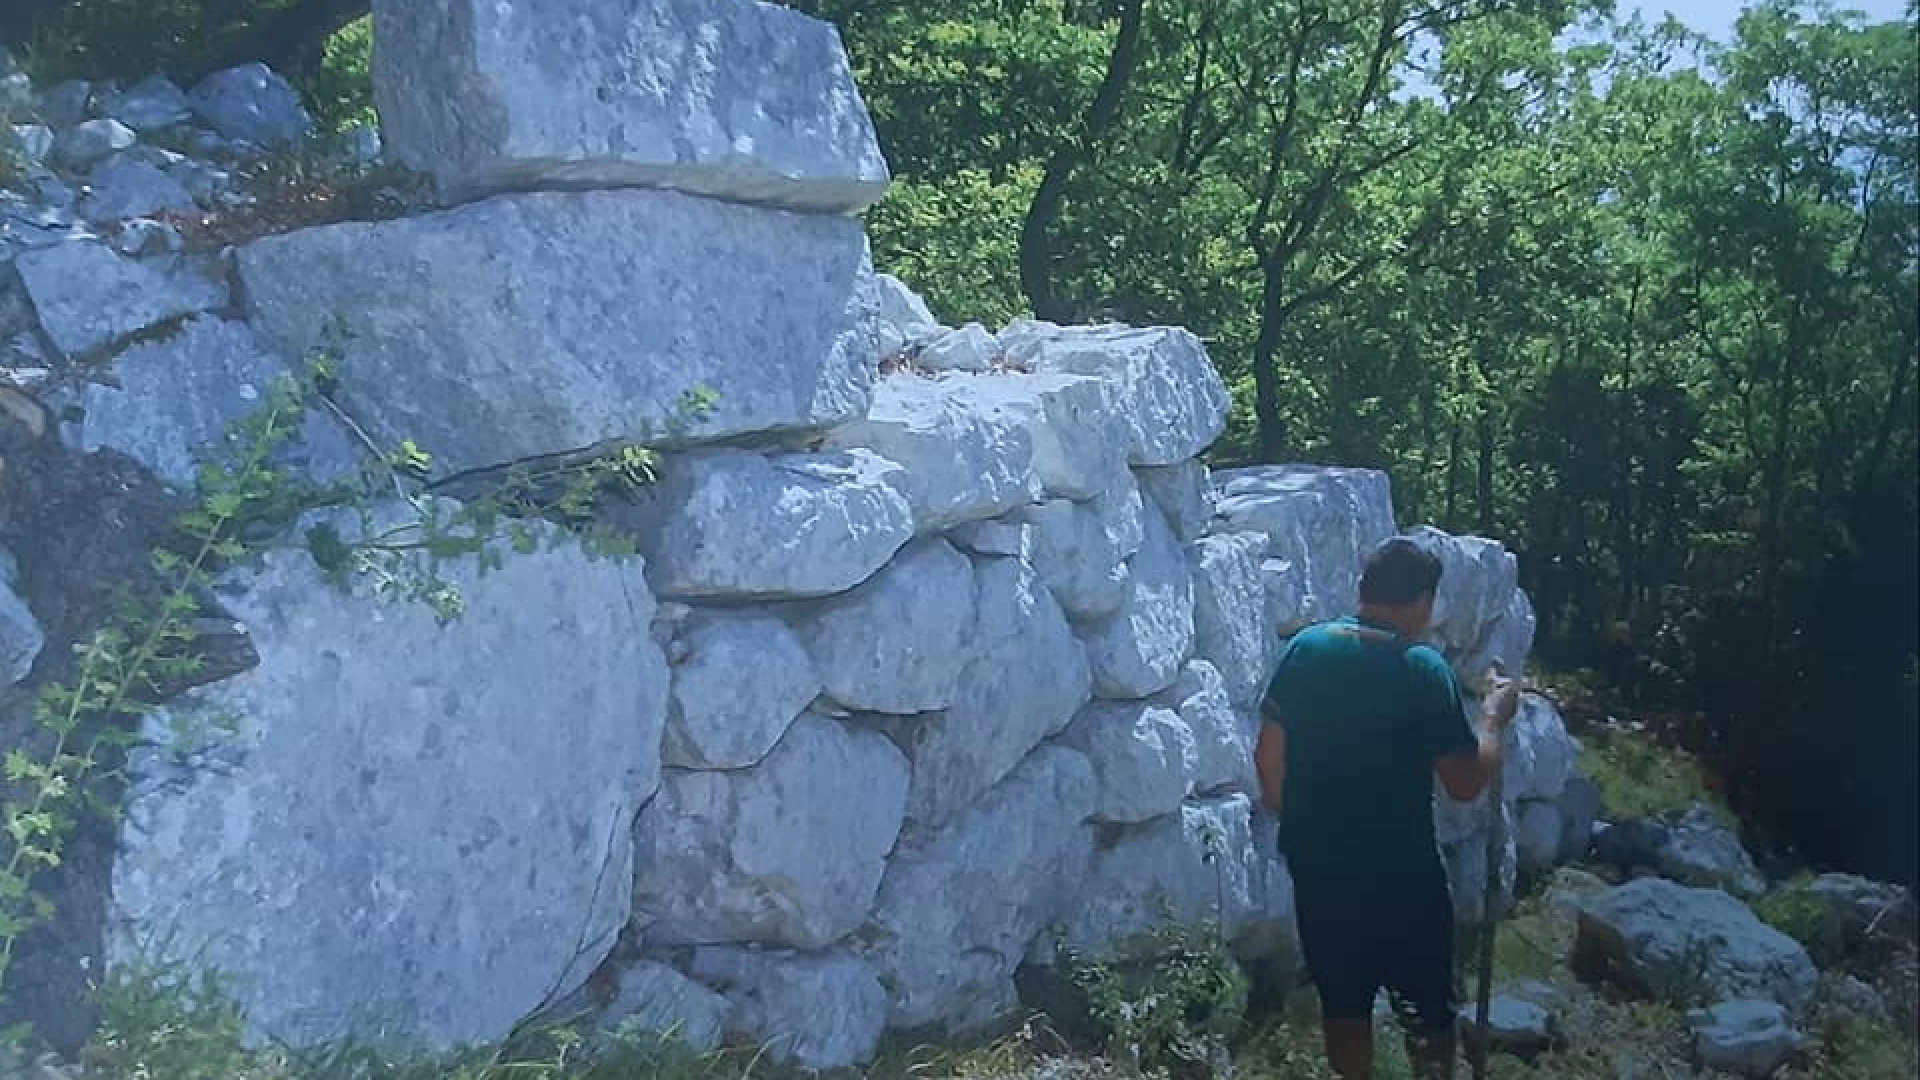 Colli a Volturno: il Mibac autorizza il comune ad attuare ricerche scientifiche allo scavo archeologico in località Monte Tuoro.